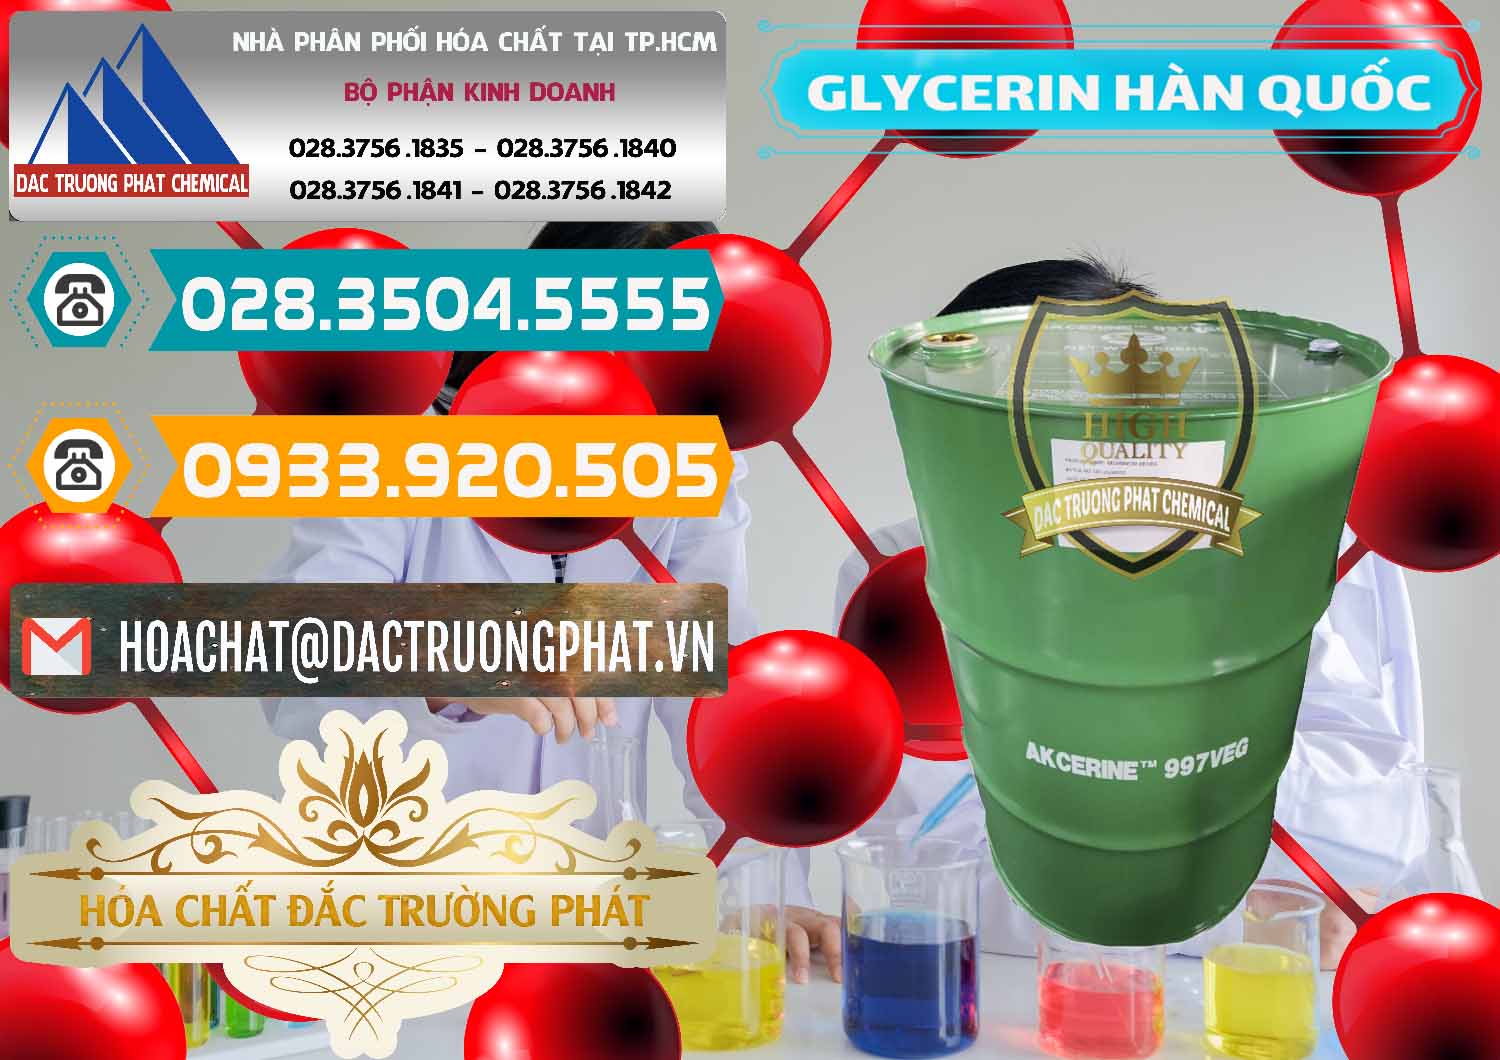 Cty chuyên bán _ cung cấp Glycerin – C3H8O3 Hàn Quốc Korea - 0403 - Cty kinh doanh & phân phối hóa chất tại TP.HCM - congtyhoachat.vn